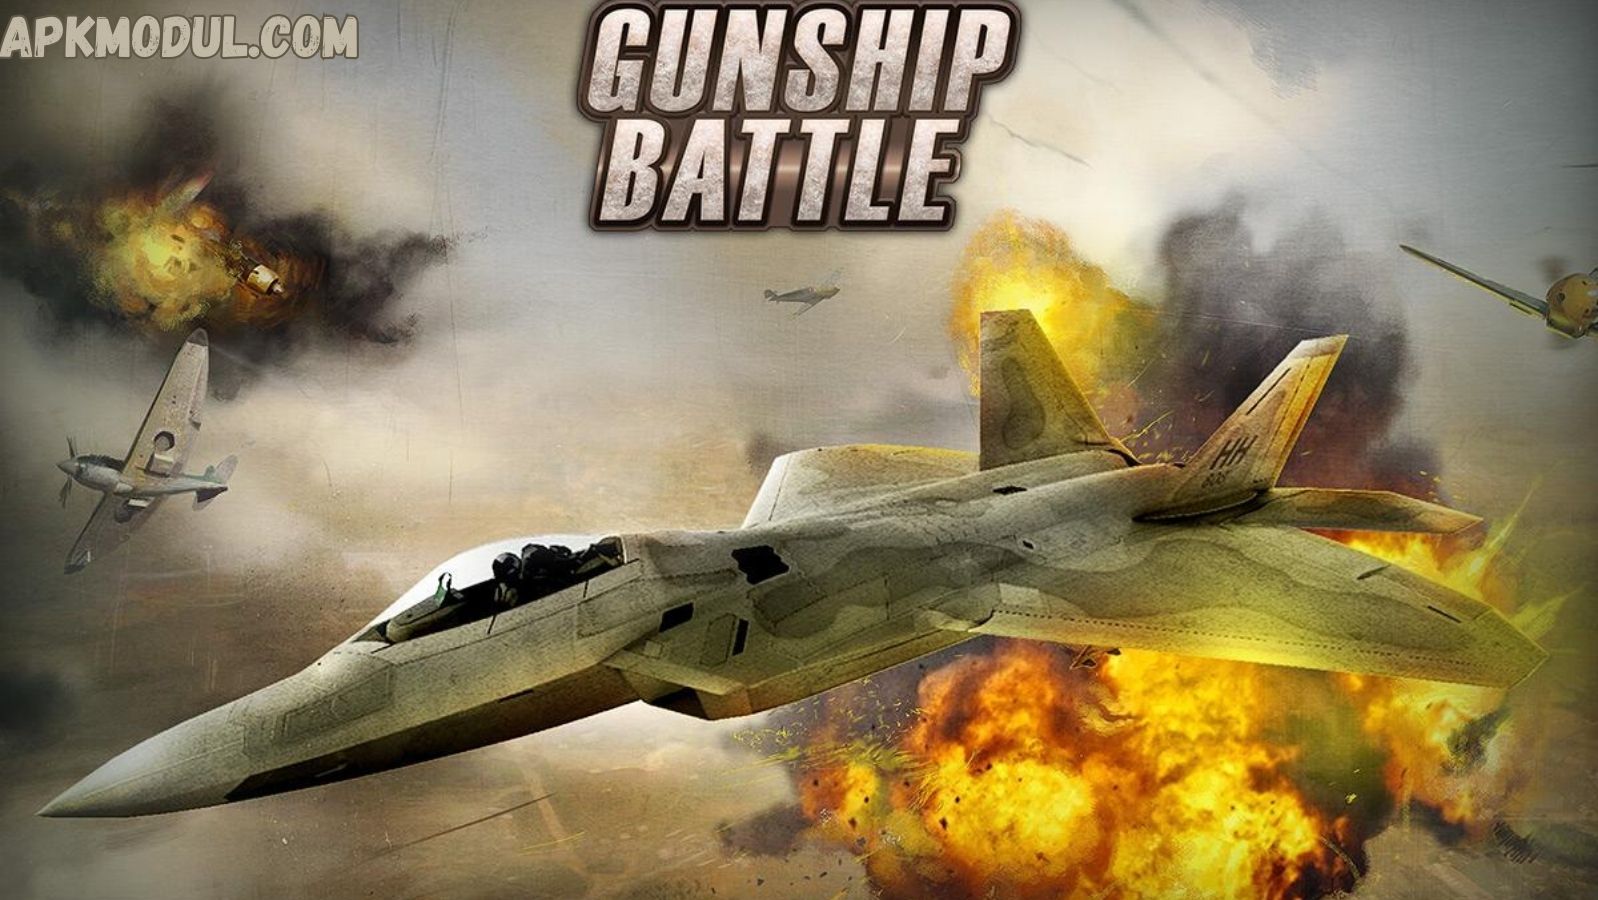 Gunship Battle Mod Apk